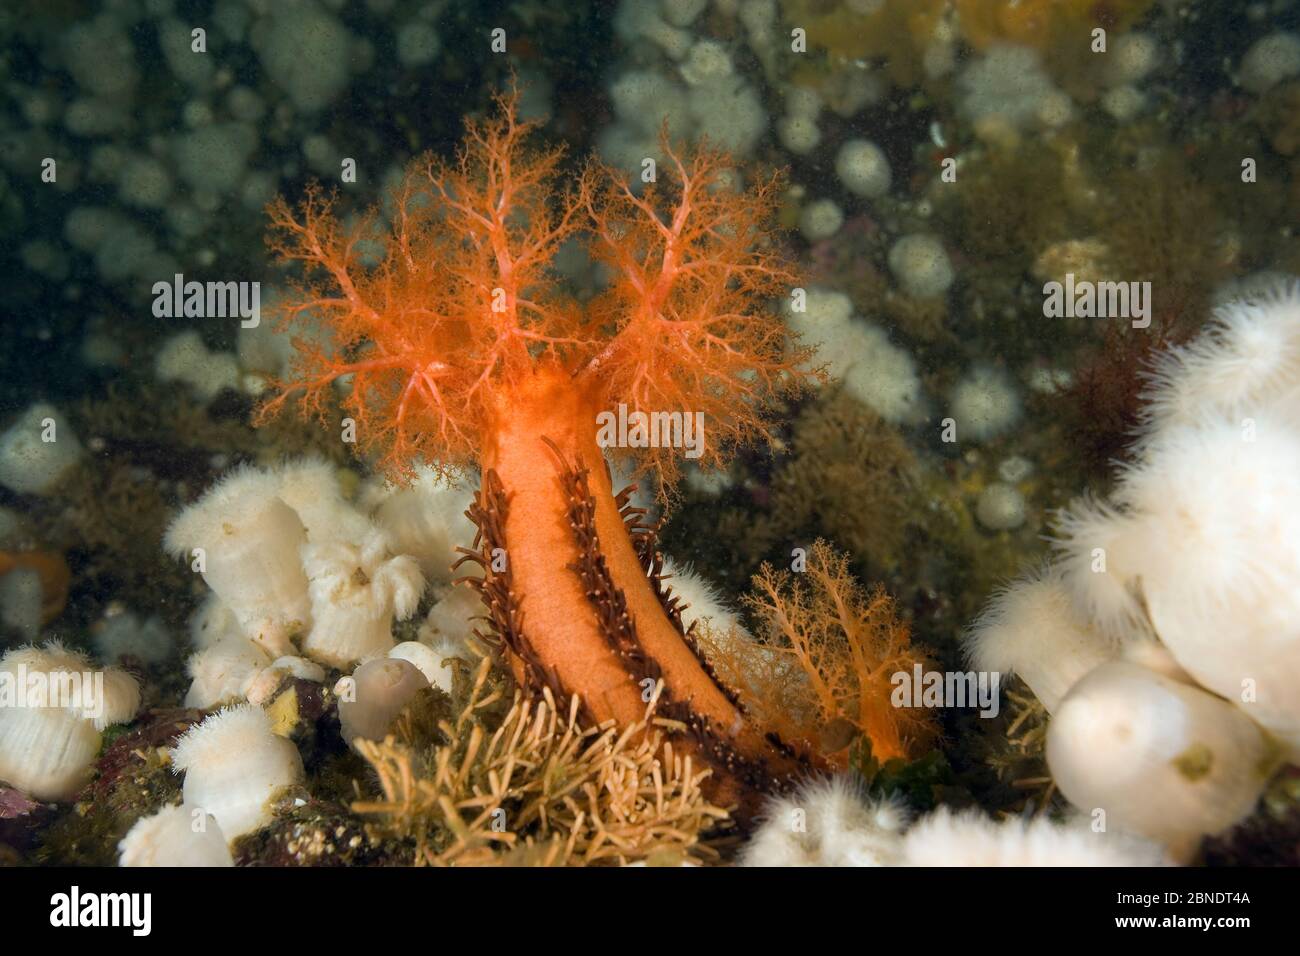 Orange sea cucumber (Cucumaria miniata) and anemone, (Metridium senile) Vancouver Island, British Columbia, Canada, Pacific Ocean Stock Photo